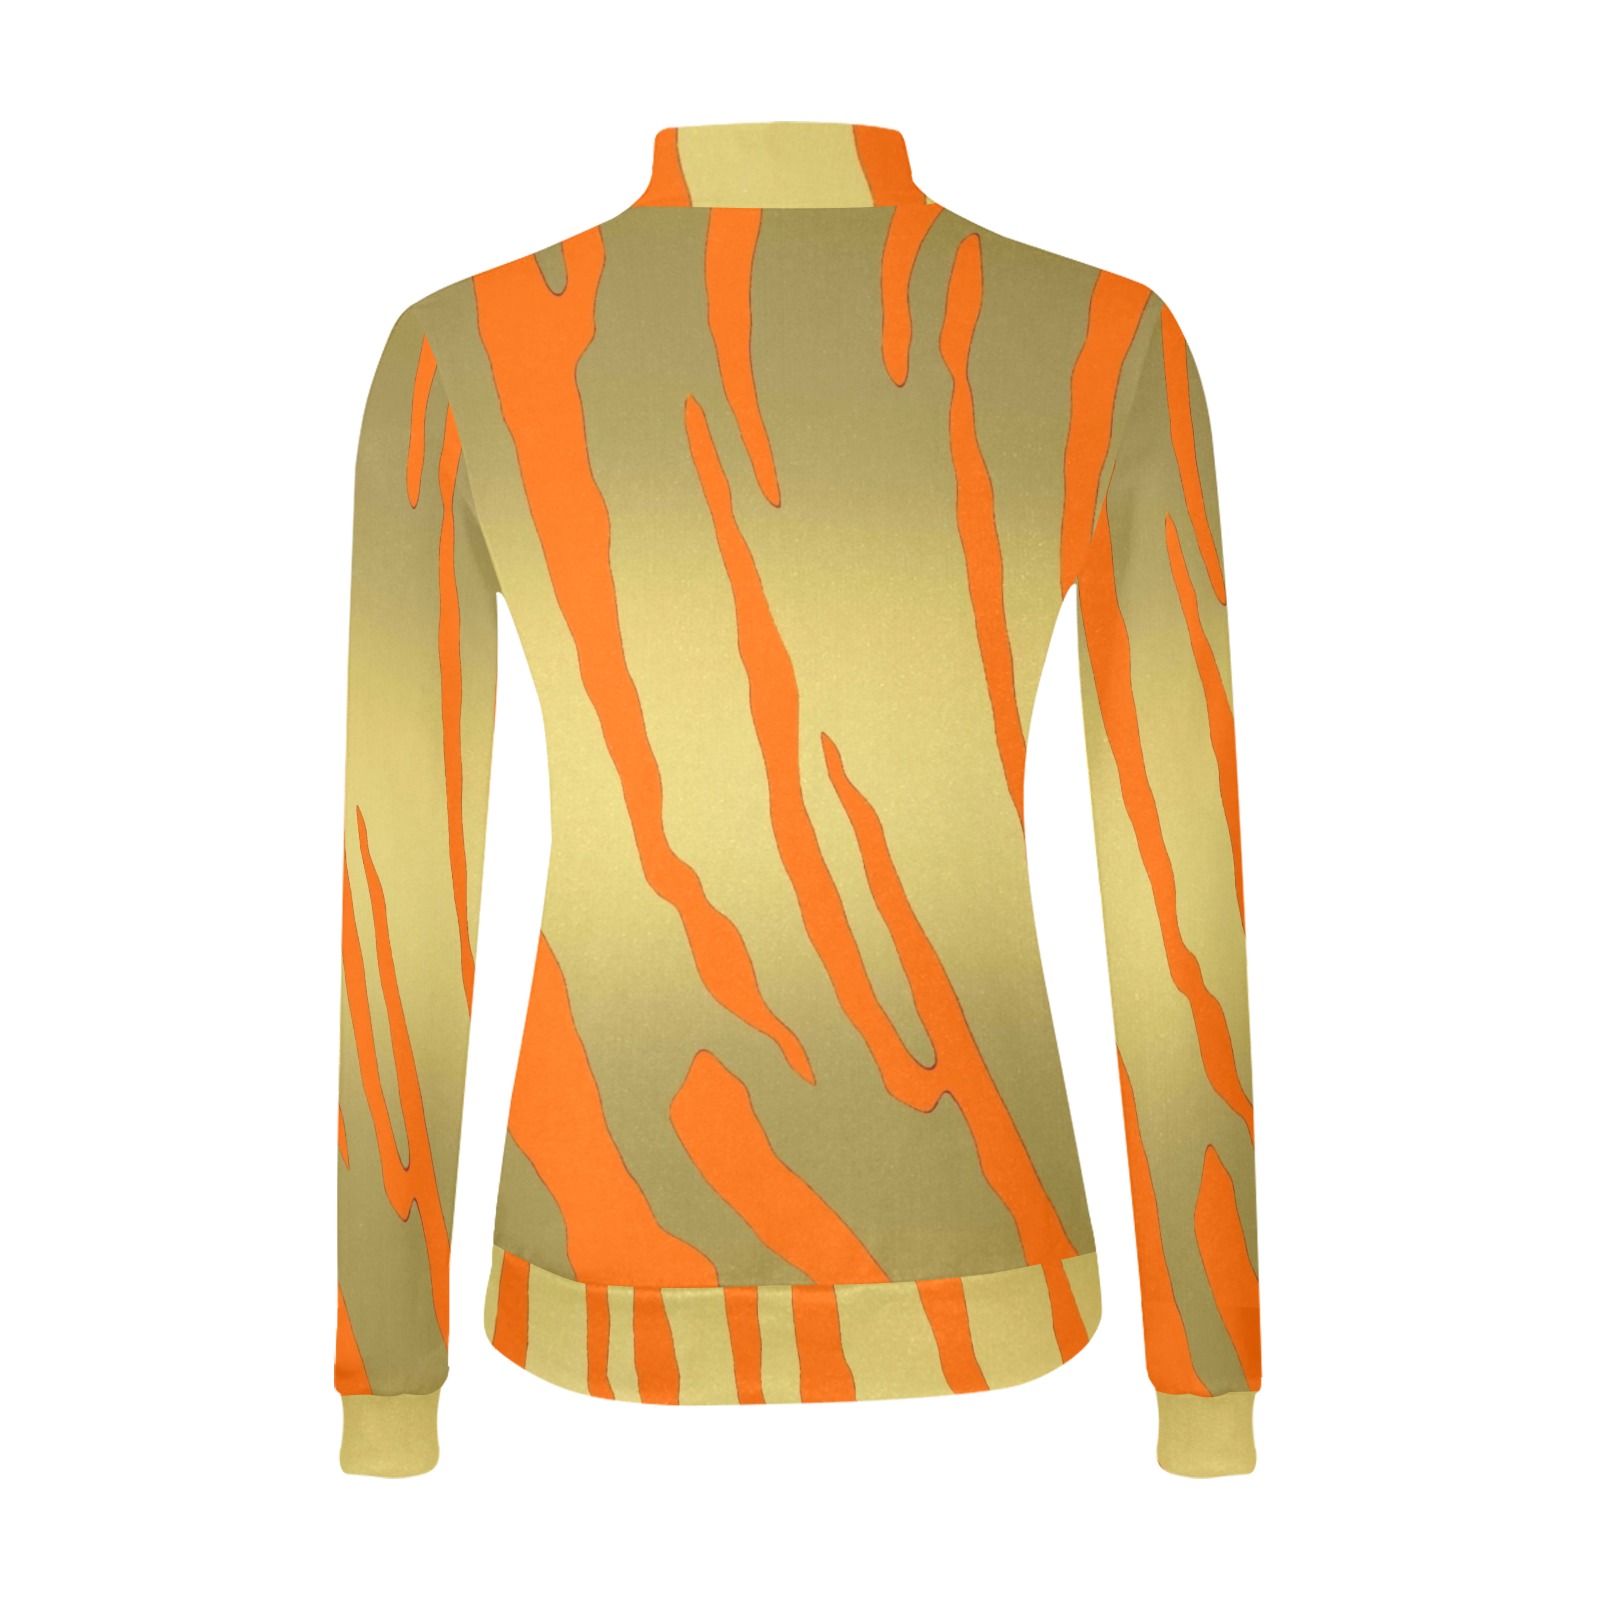 Gold Tiger Stripes Orange Women's All Over Print Mock Neck Sweatshirt (Model H43)